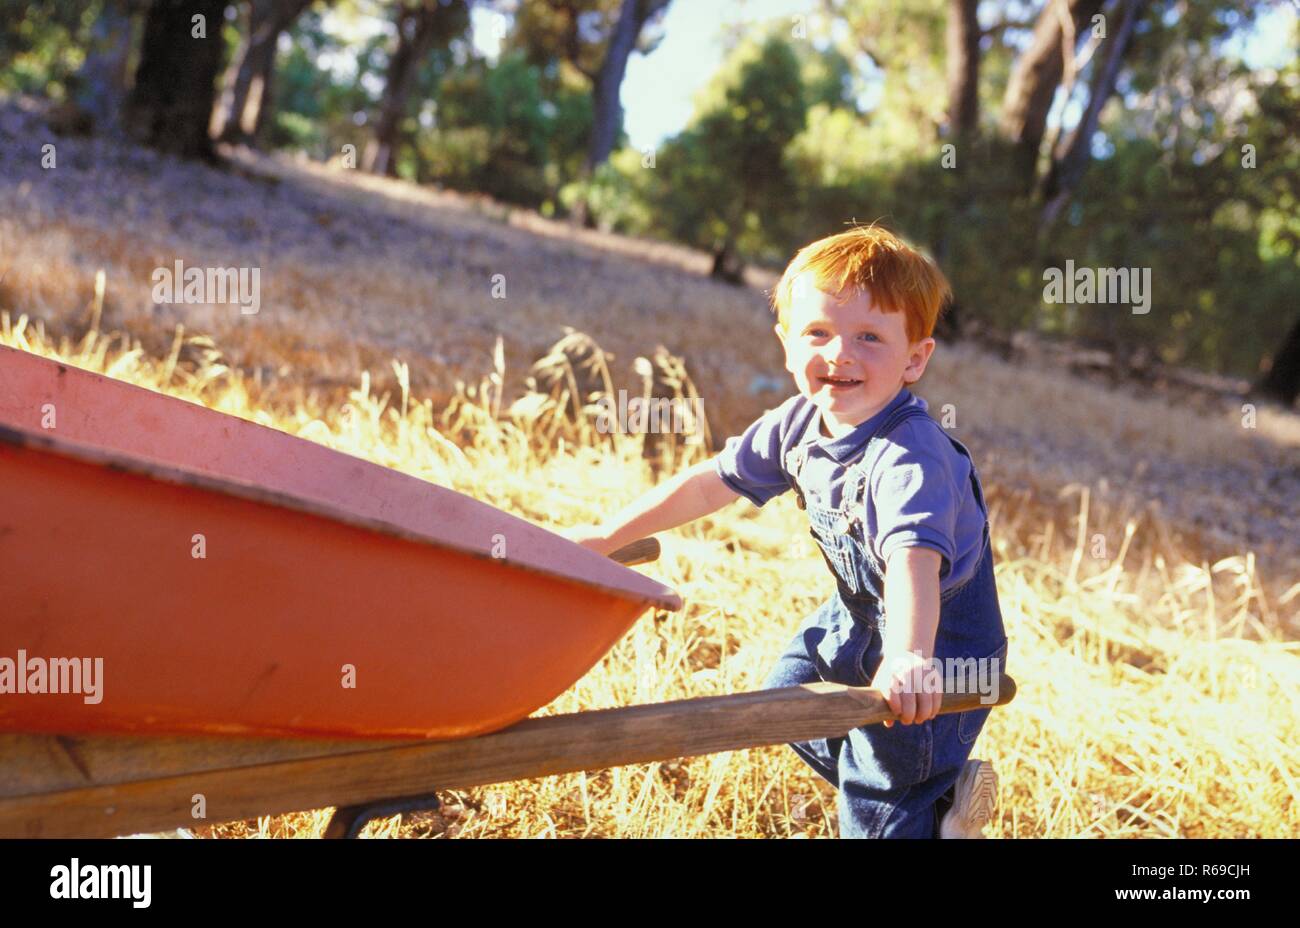 Portrait, Ganzfigur, rothaariger Junge, 4 Jahre, bekleidet mit Jeans und Turnschuhen schiebt eine rote Schubkarre ueber eine Wiese Stock Photo